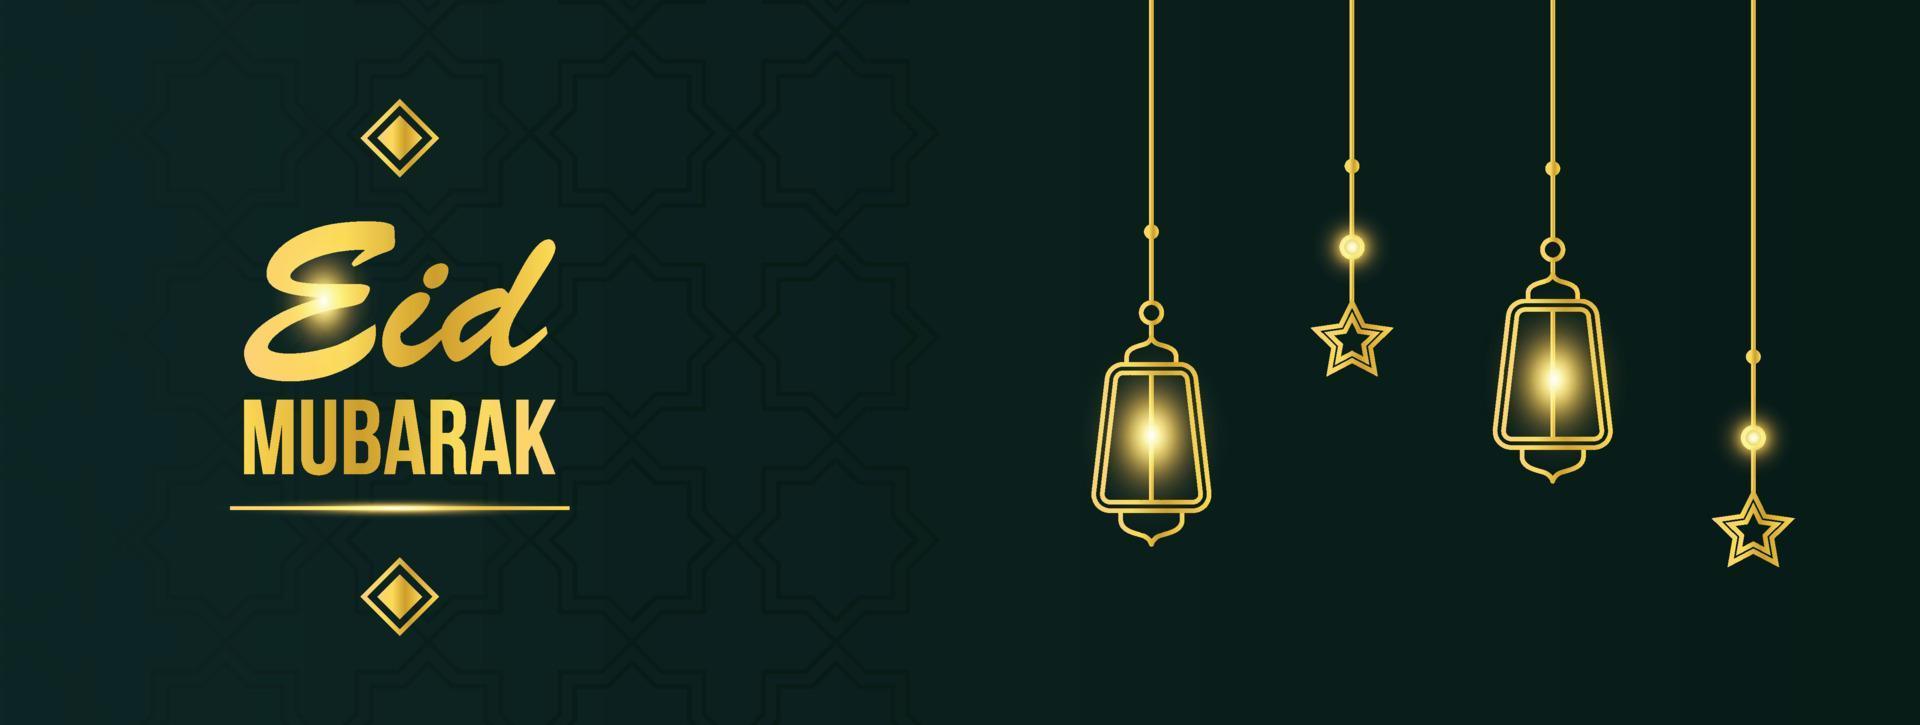 modelo de banner e pôster dourado eid mubarak com lanternas iluminadas e decoração de estrelas. cartão de felicitações islâmicas vetor